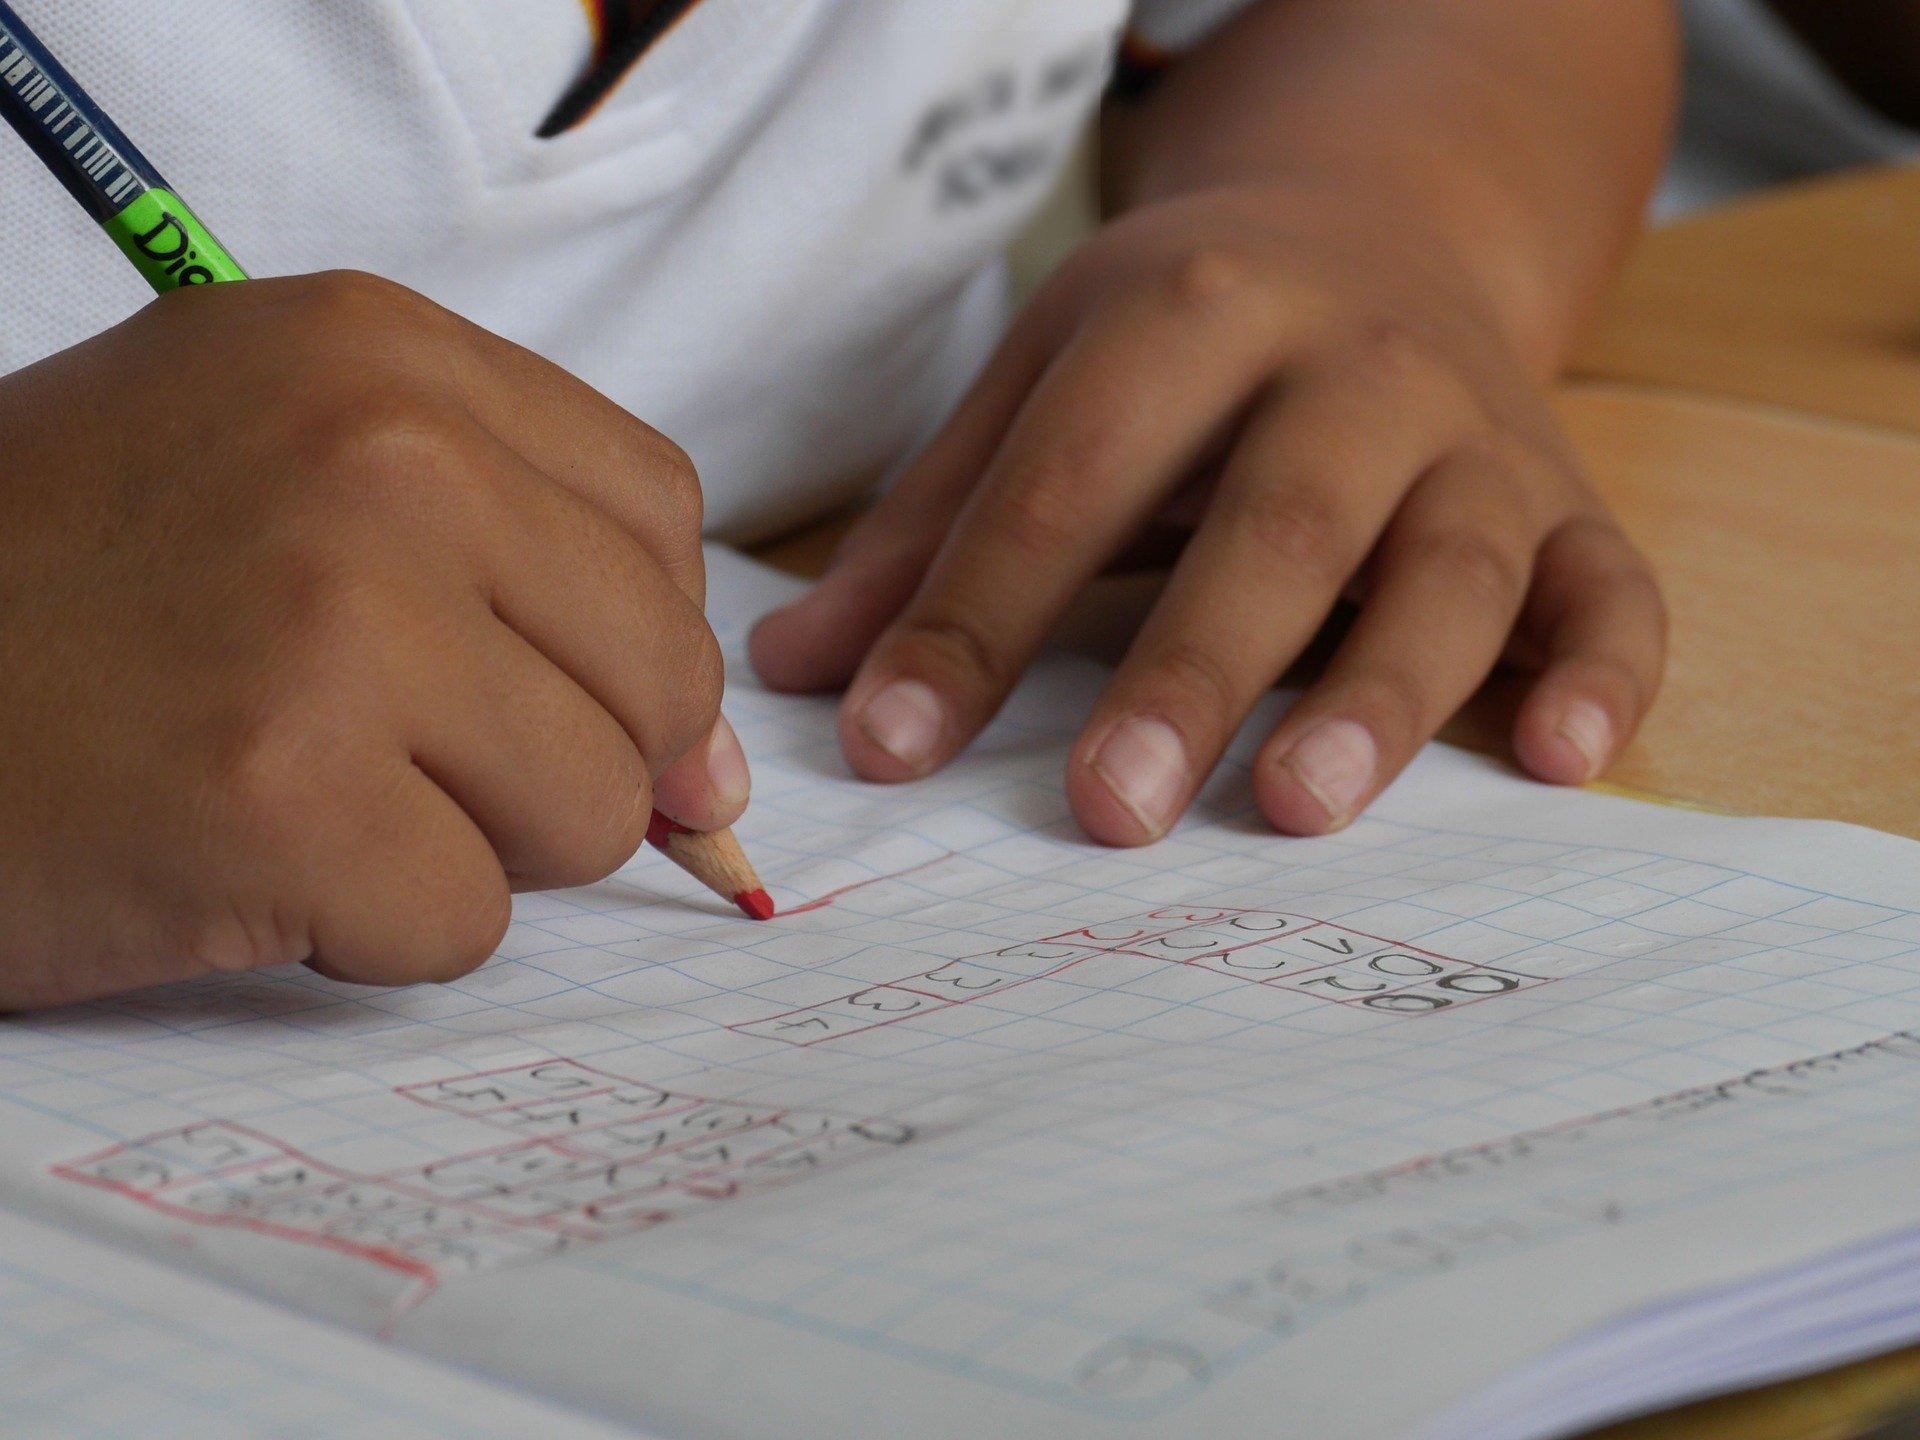 Un niño aprendiendo en el colegio. Fuente: Pixabay.